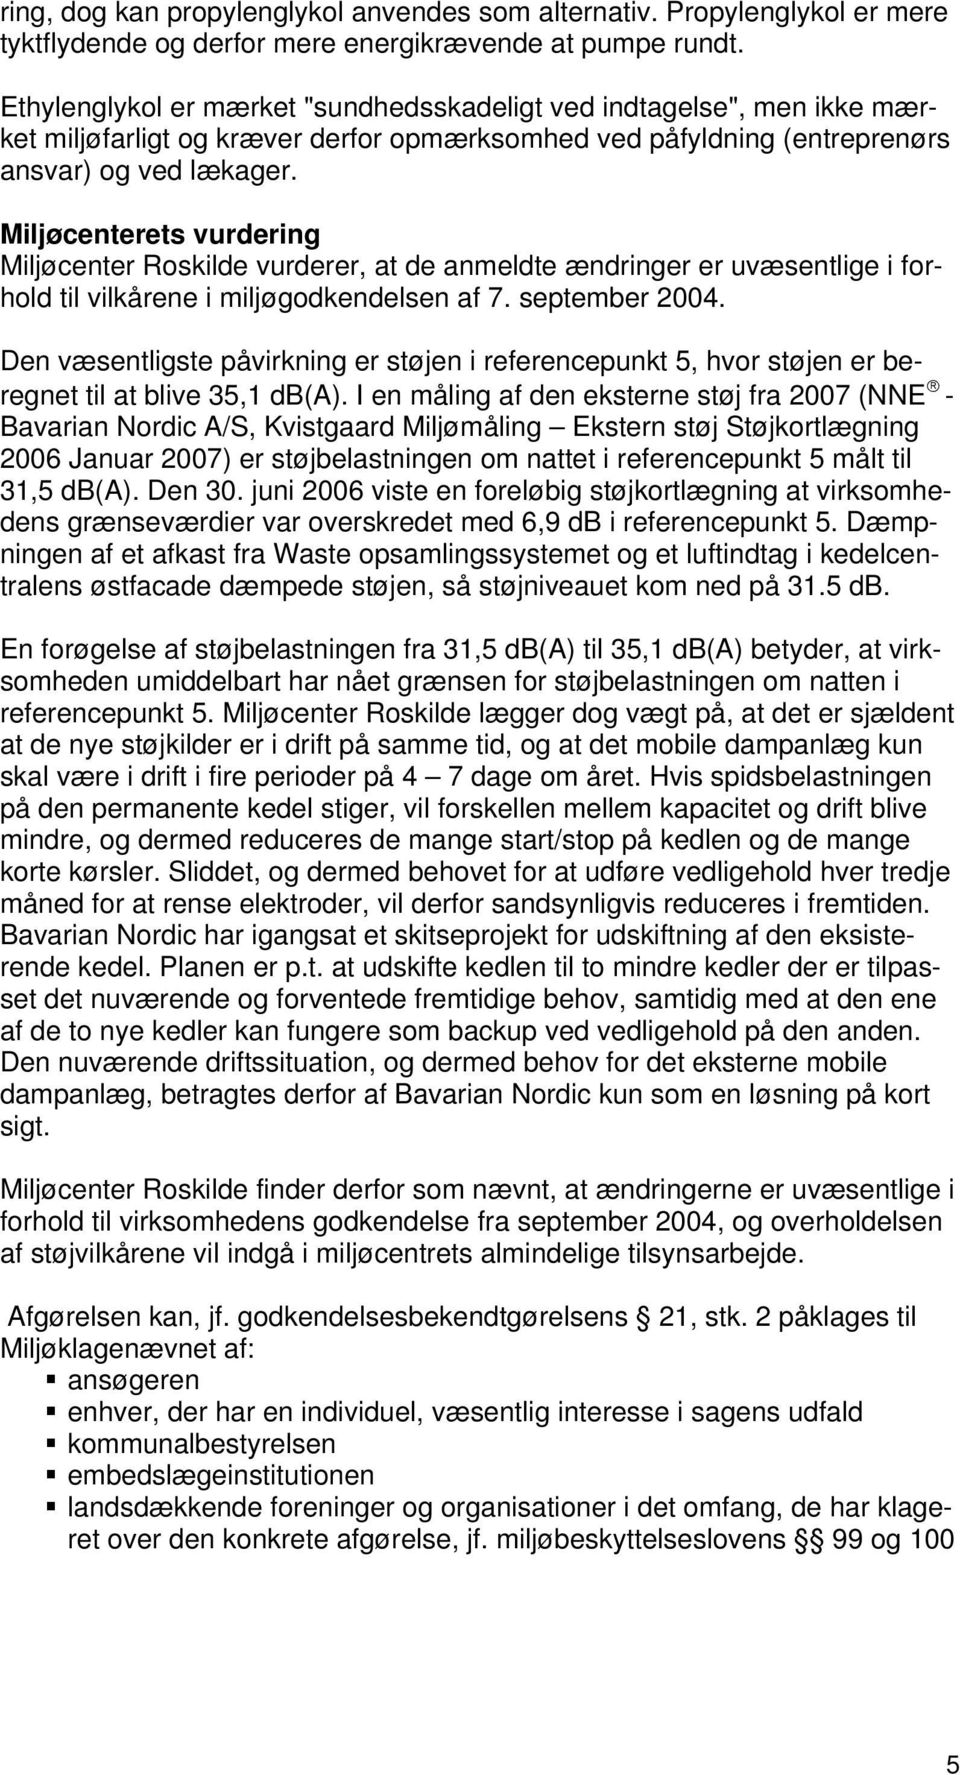 Miljøcenterets vurdering Miljøcenter Roskilde vurderer, at de anmeldte ændringer er uvæsentlige i forhold til vilkårene i miljøgodkendelsen af 7. september 2004.